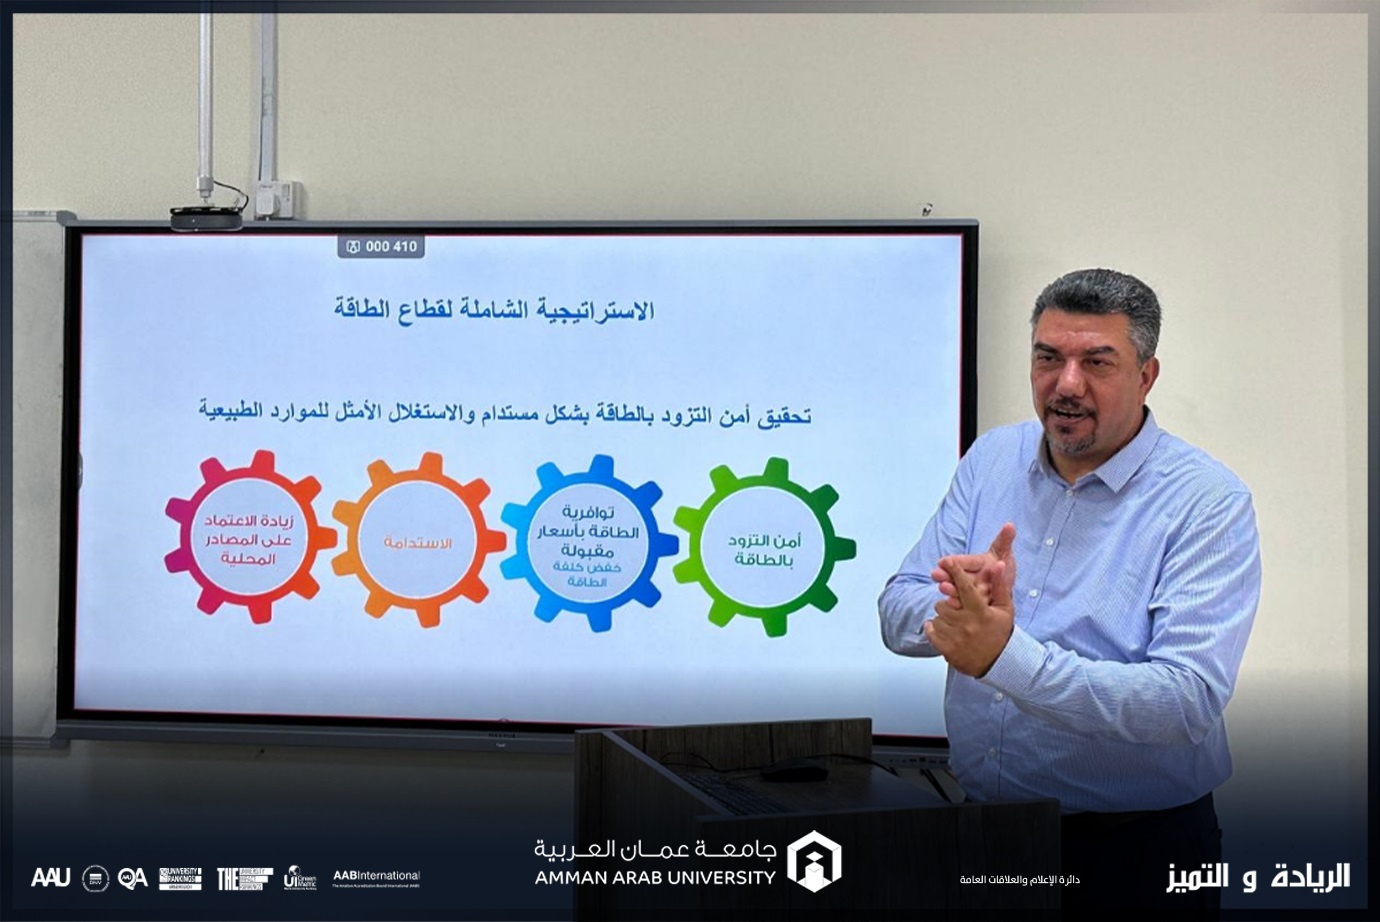 هندسة الطاقة المتجددة في "عمان العربية" يستضيف مستشار الطاقة الدكتور إياد السرطاوي